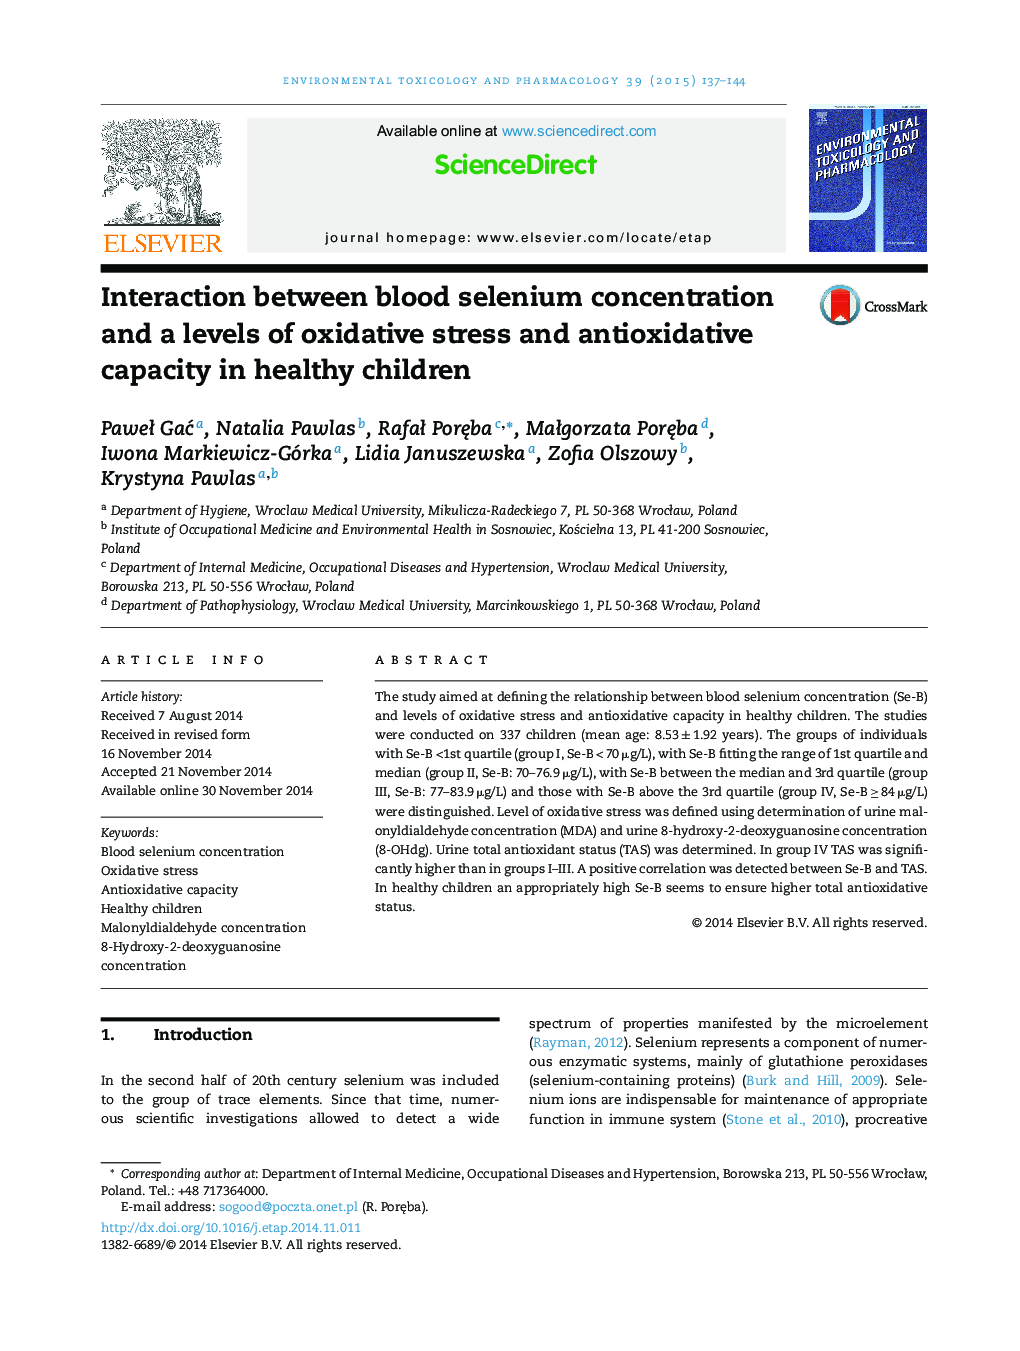 تعامل بین غلظت سلنیوم خون و سطوح استرس اکسیداتیو و ظرفیت آنتی اکسیداتیو در کودکان سالم 